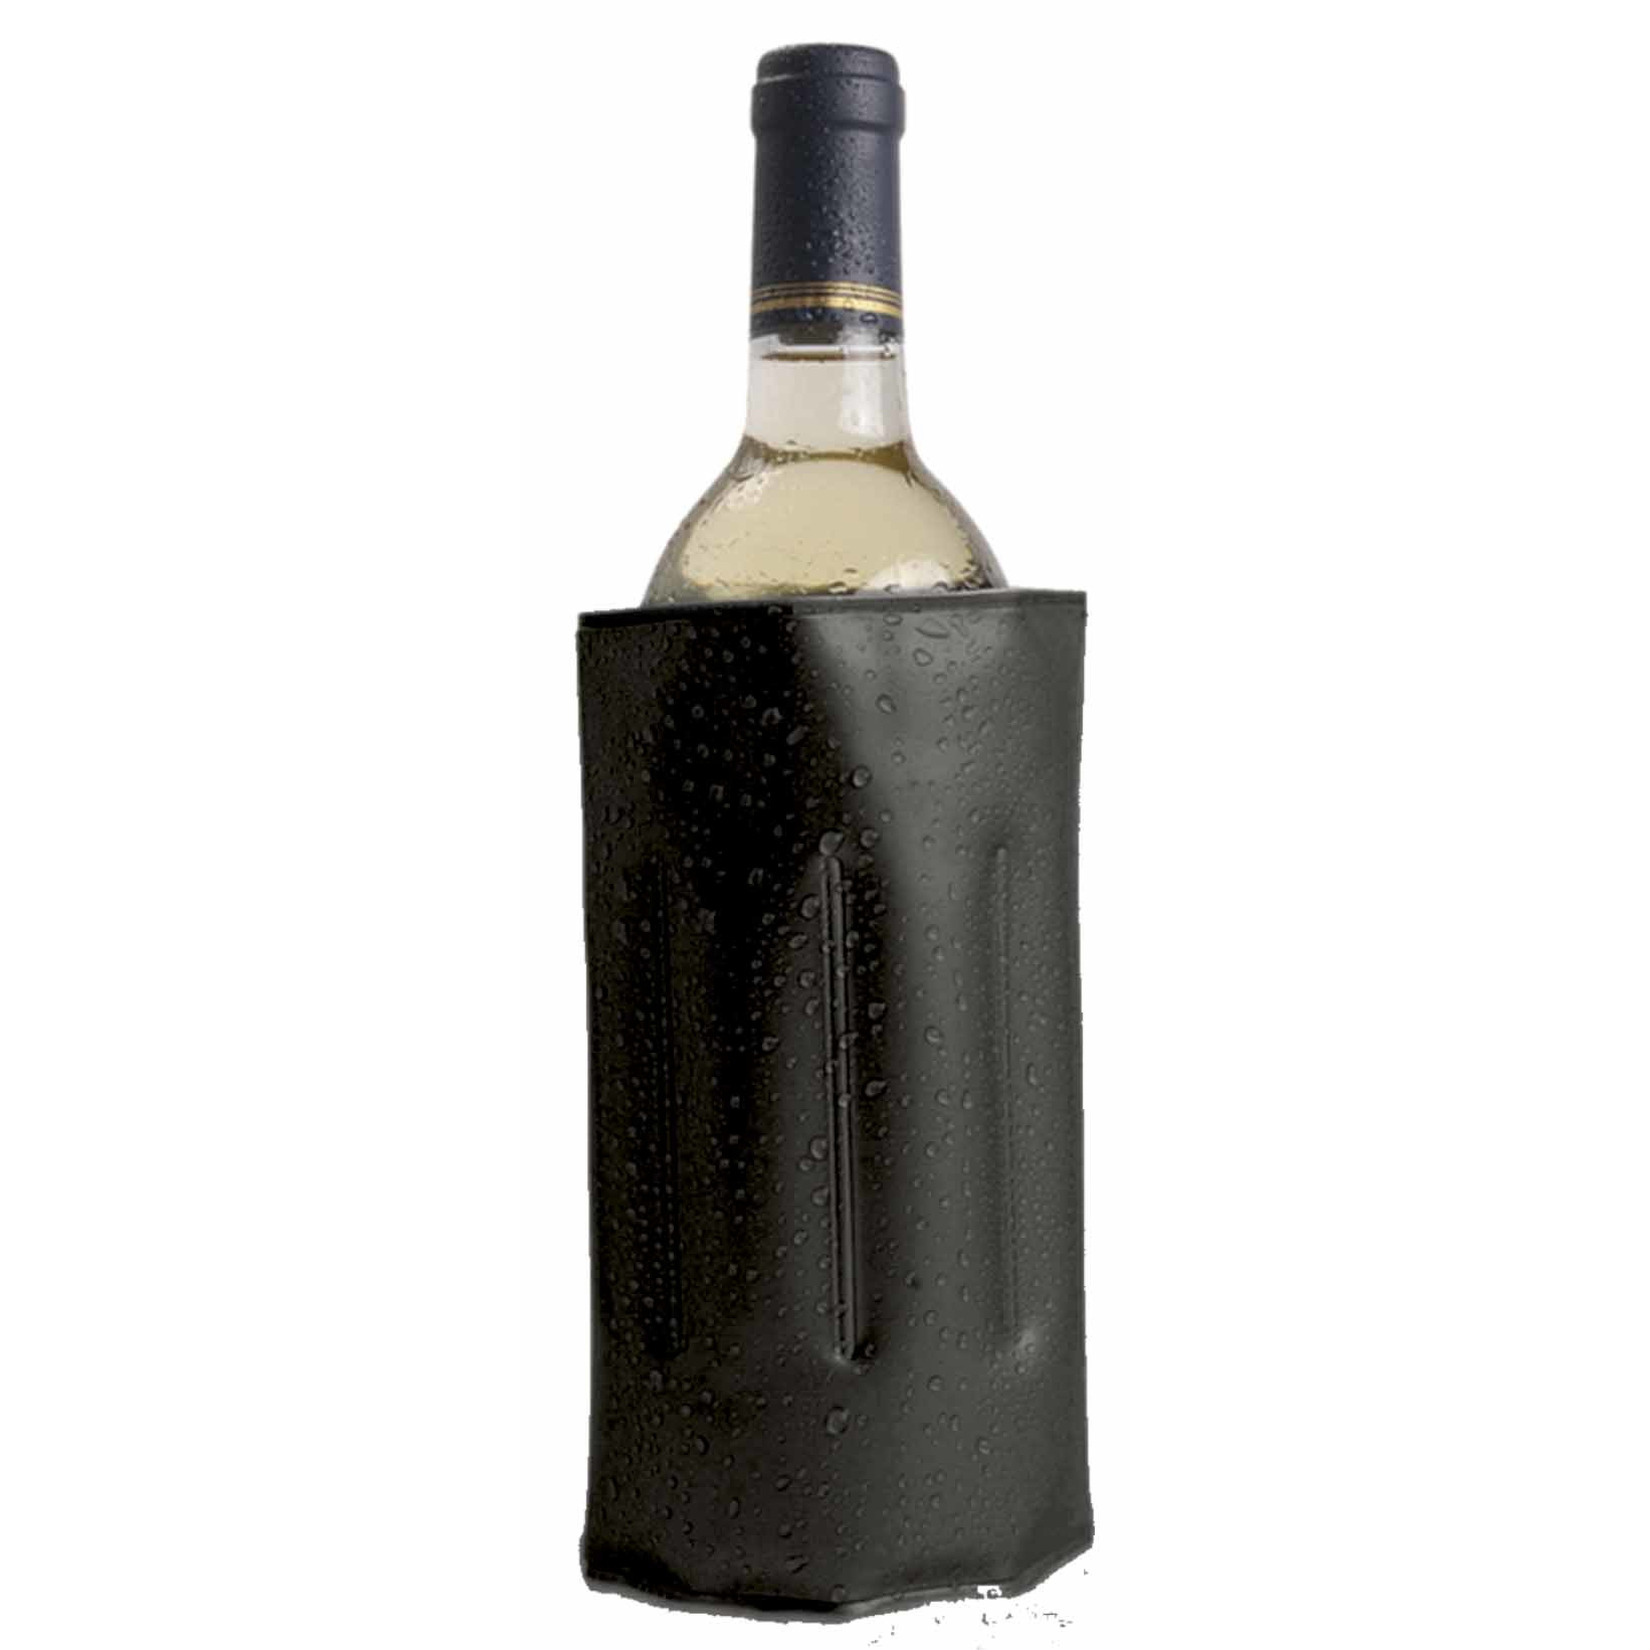 1x Wijnflessen-drankflessen koeler hoes zwart 34 x 18 cm